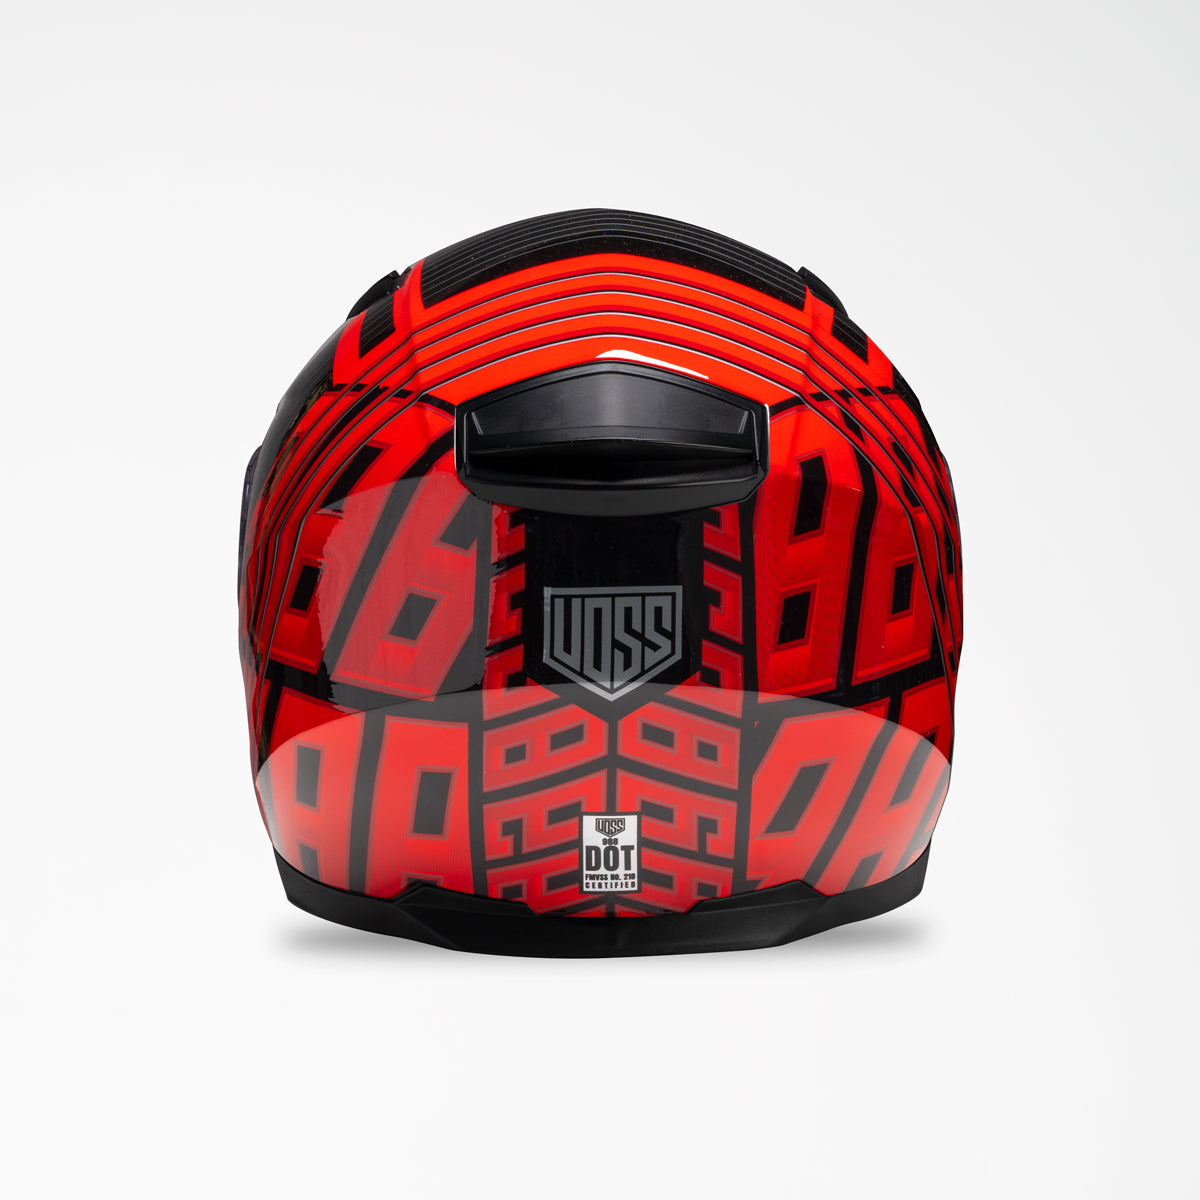 Voss 988 Moto-1 Echo Red Helmet